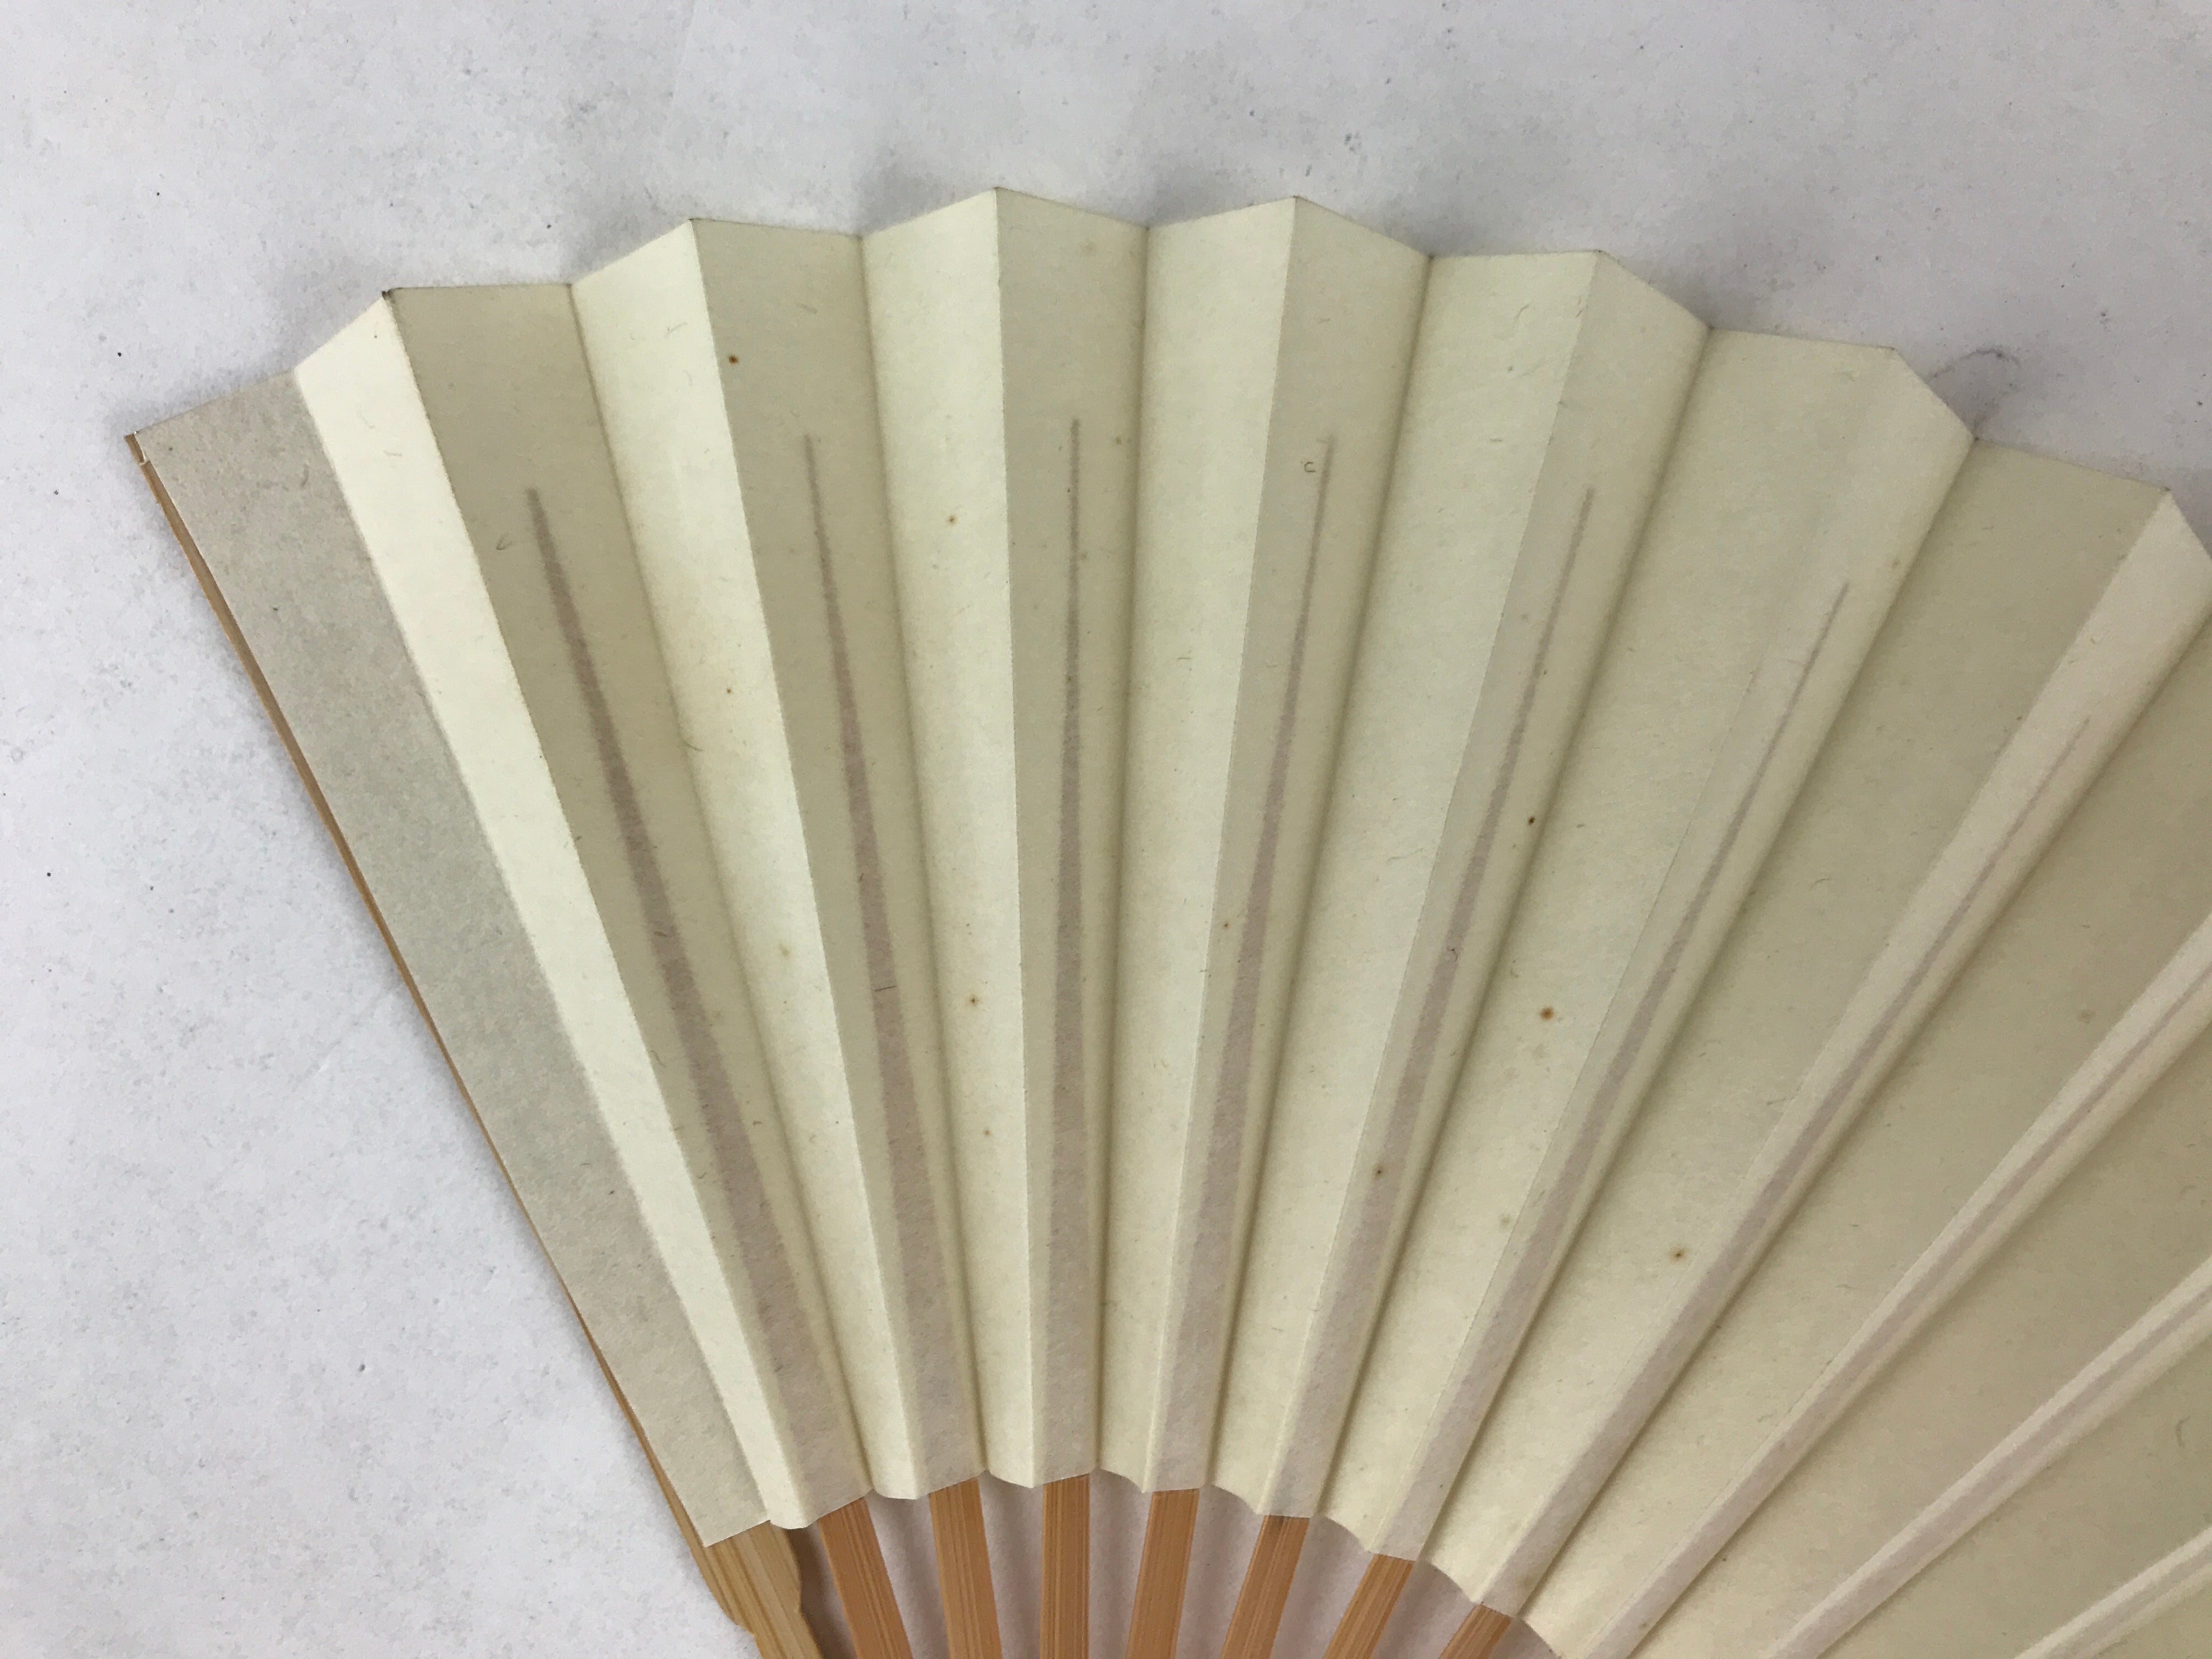 Japanese Folding Fan Sensu Vtg Bamboo Frame Simple Blank White 4D759